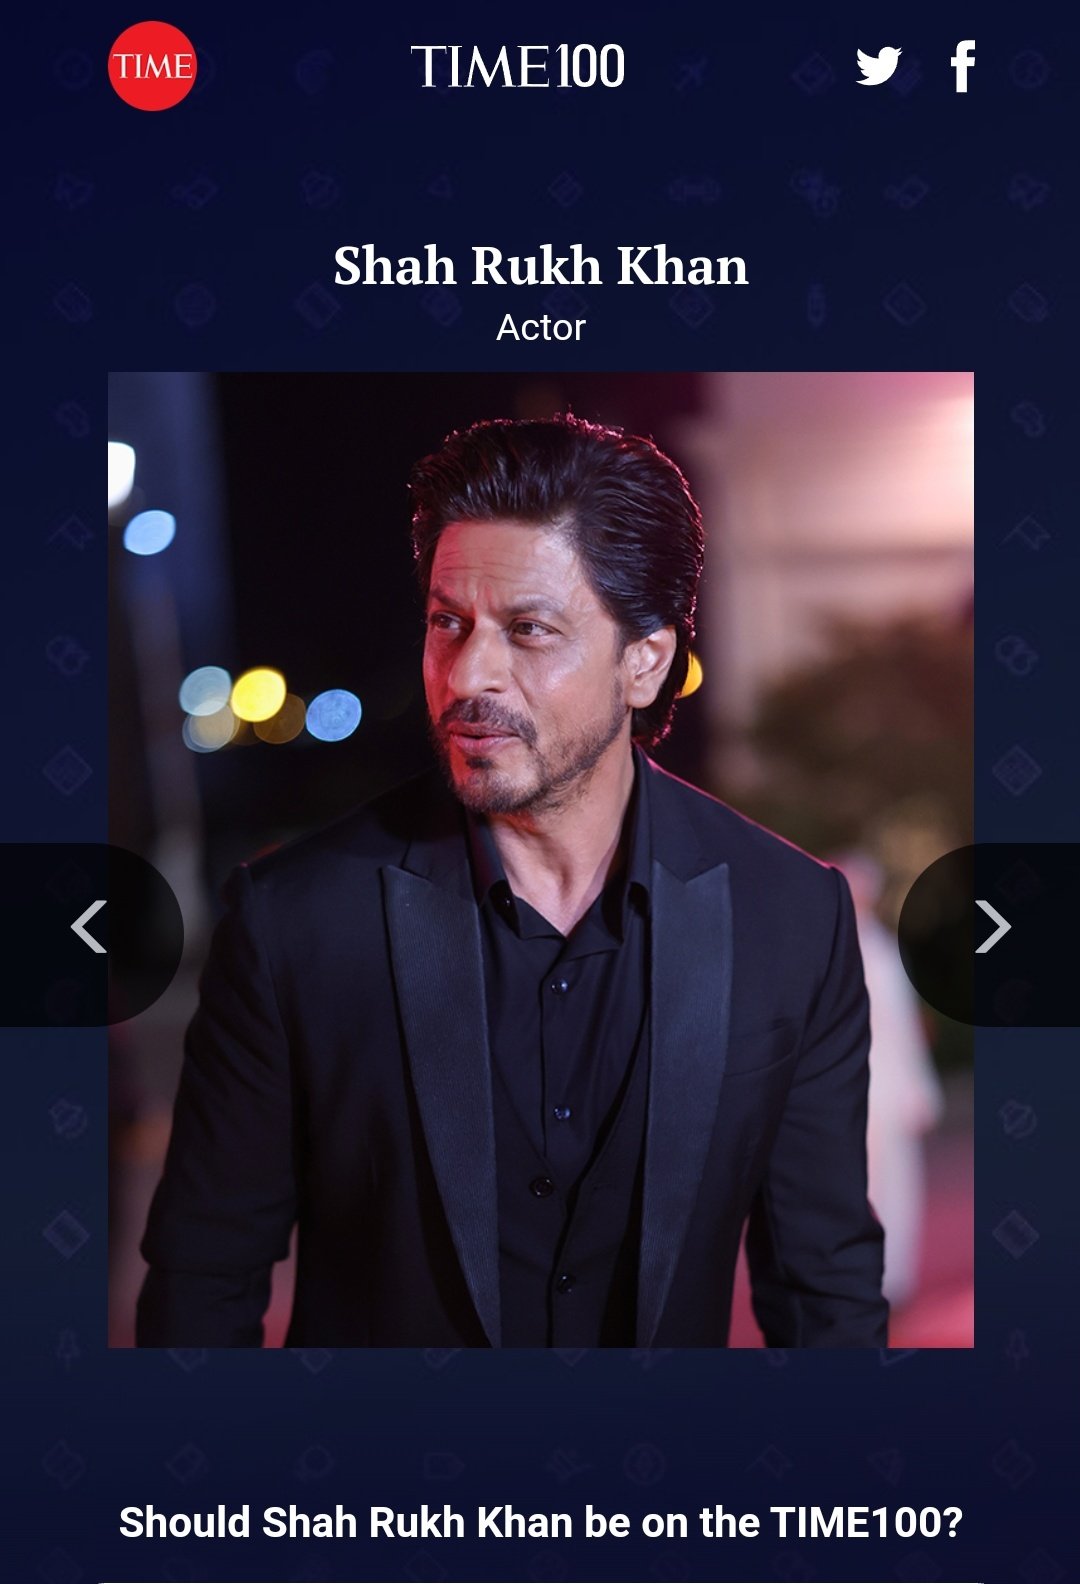 Vote for SRK Twitter